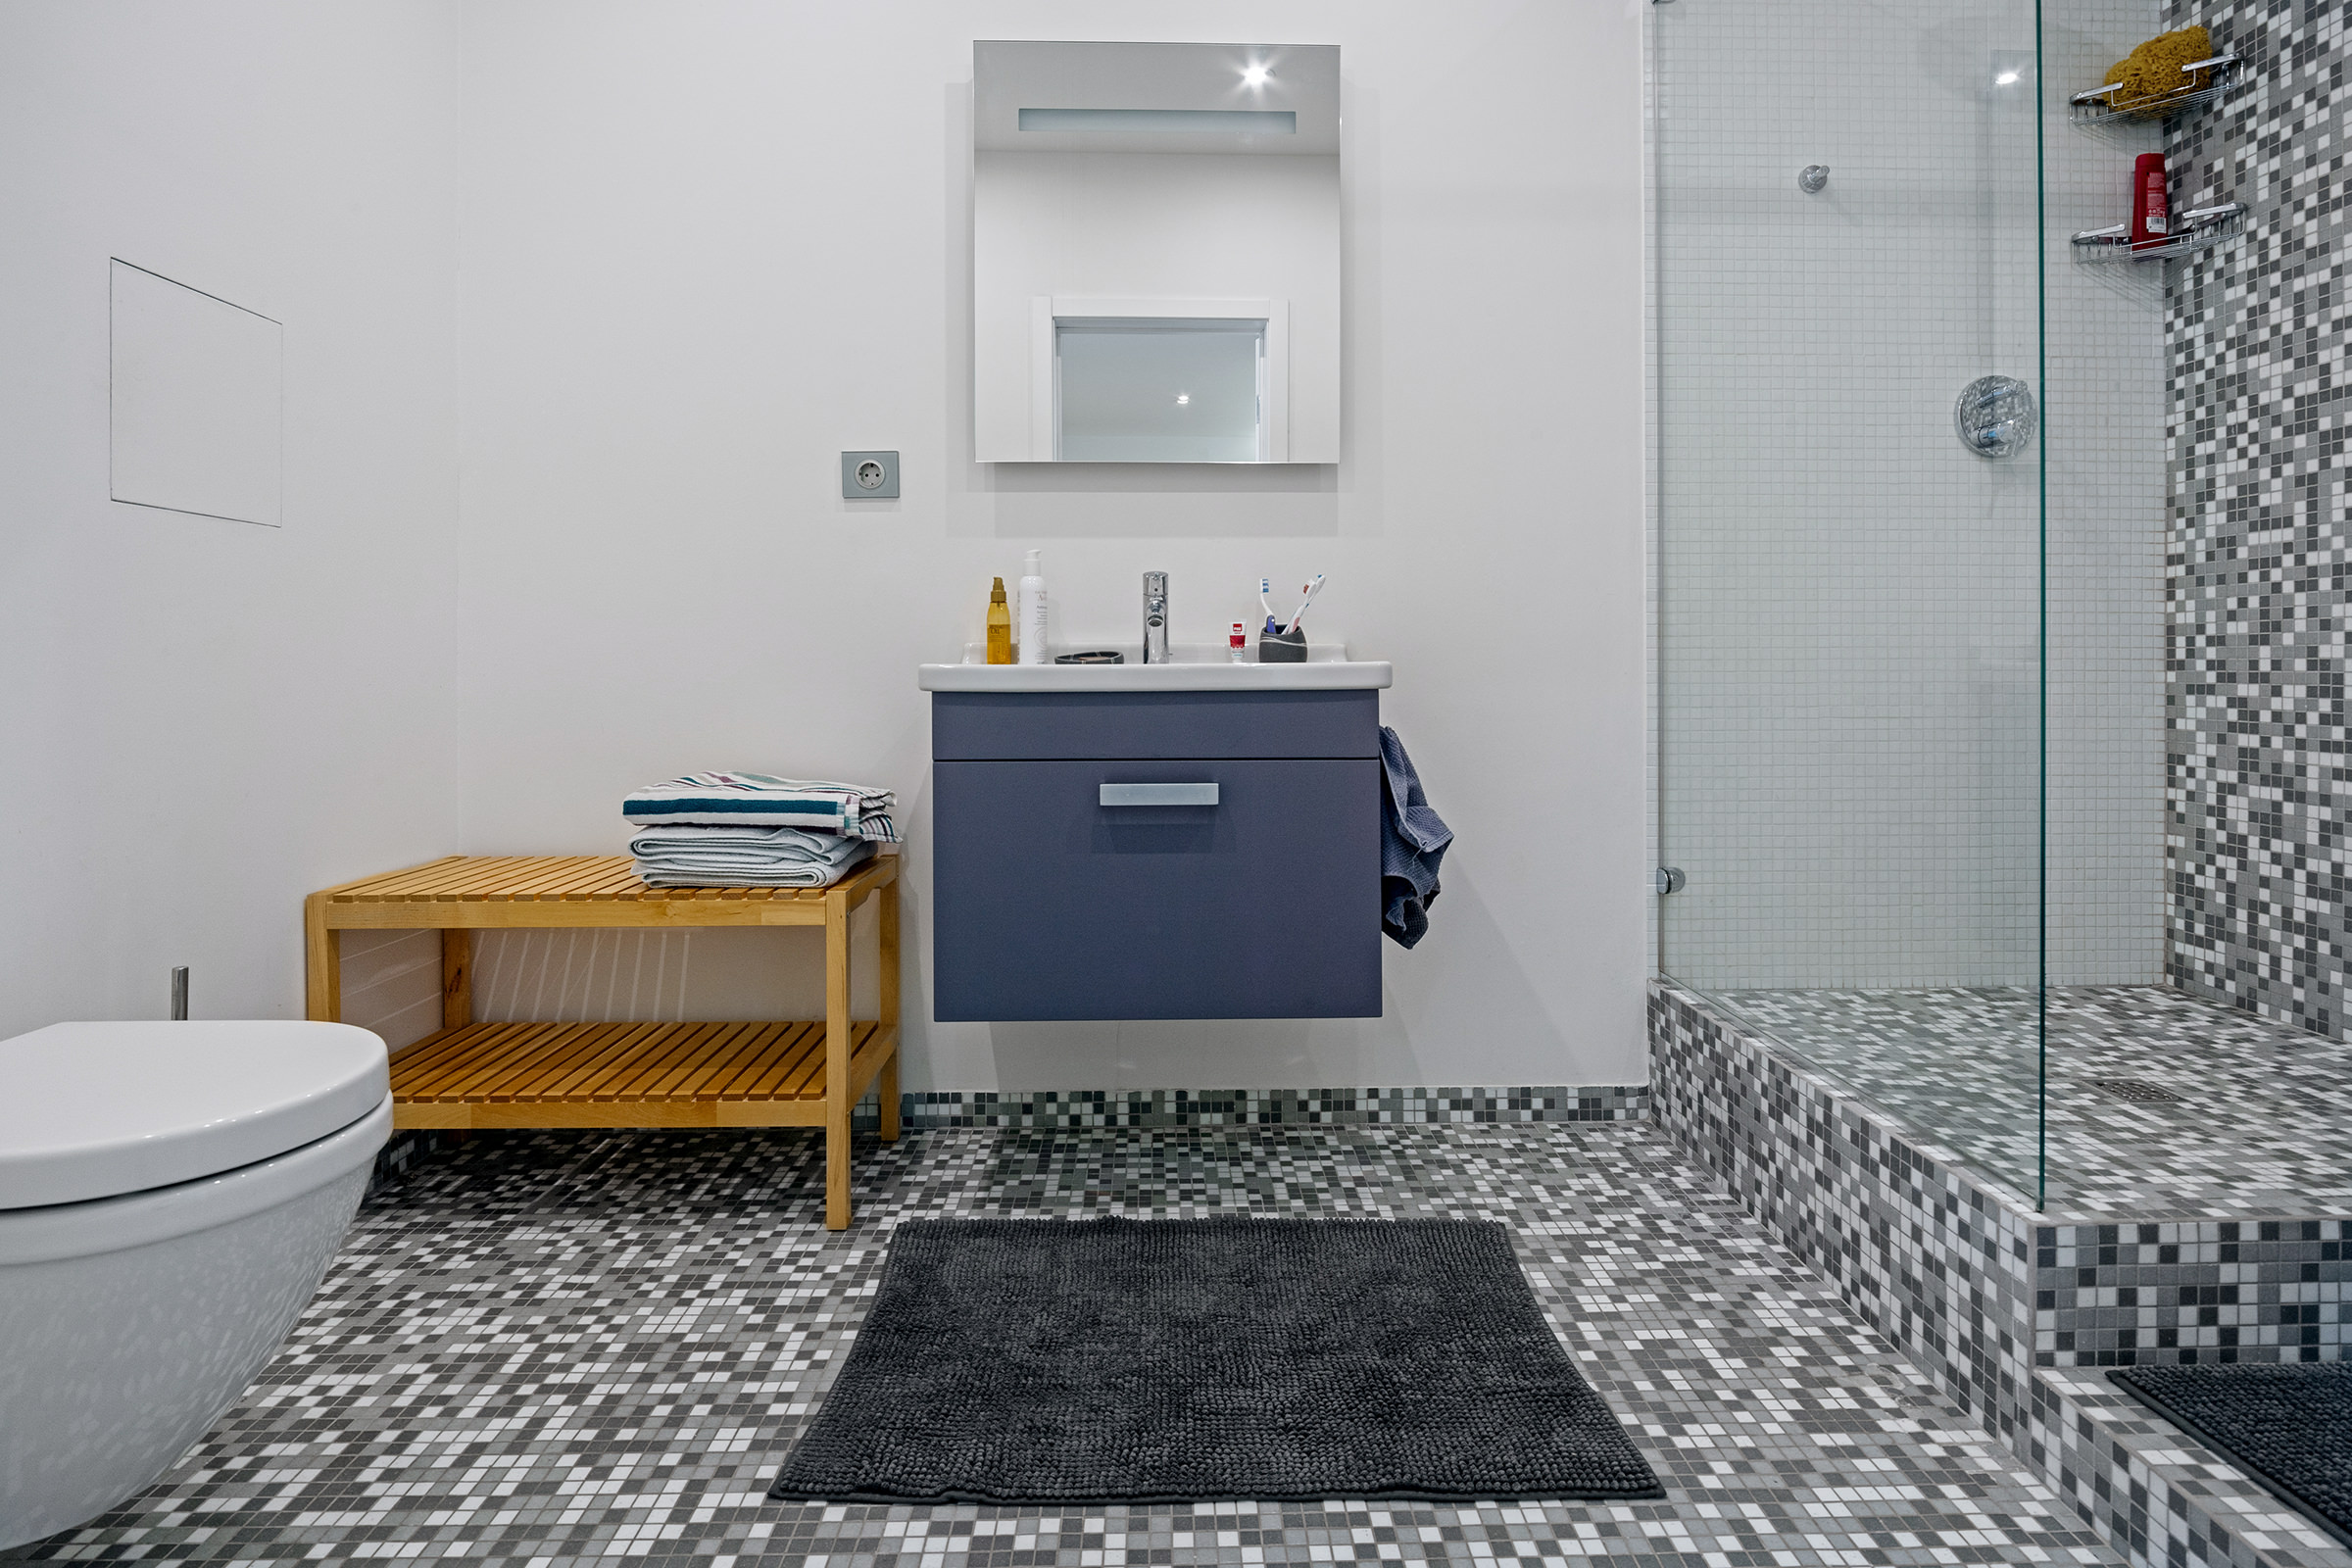 Интерьерная фотография совмещённой ванной комнаты с туалетом и душем в светлых тонах, мелкой серой плиткой и синей тумбочкой